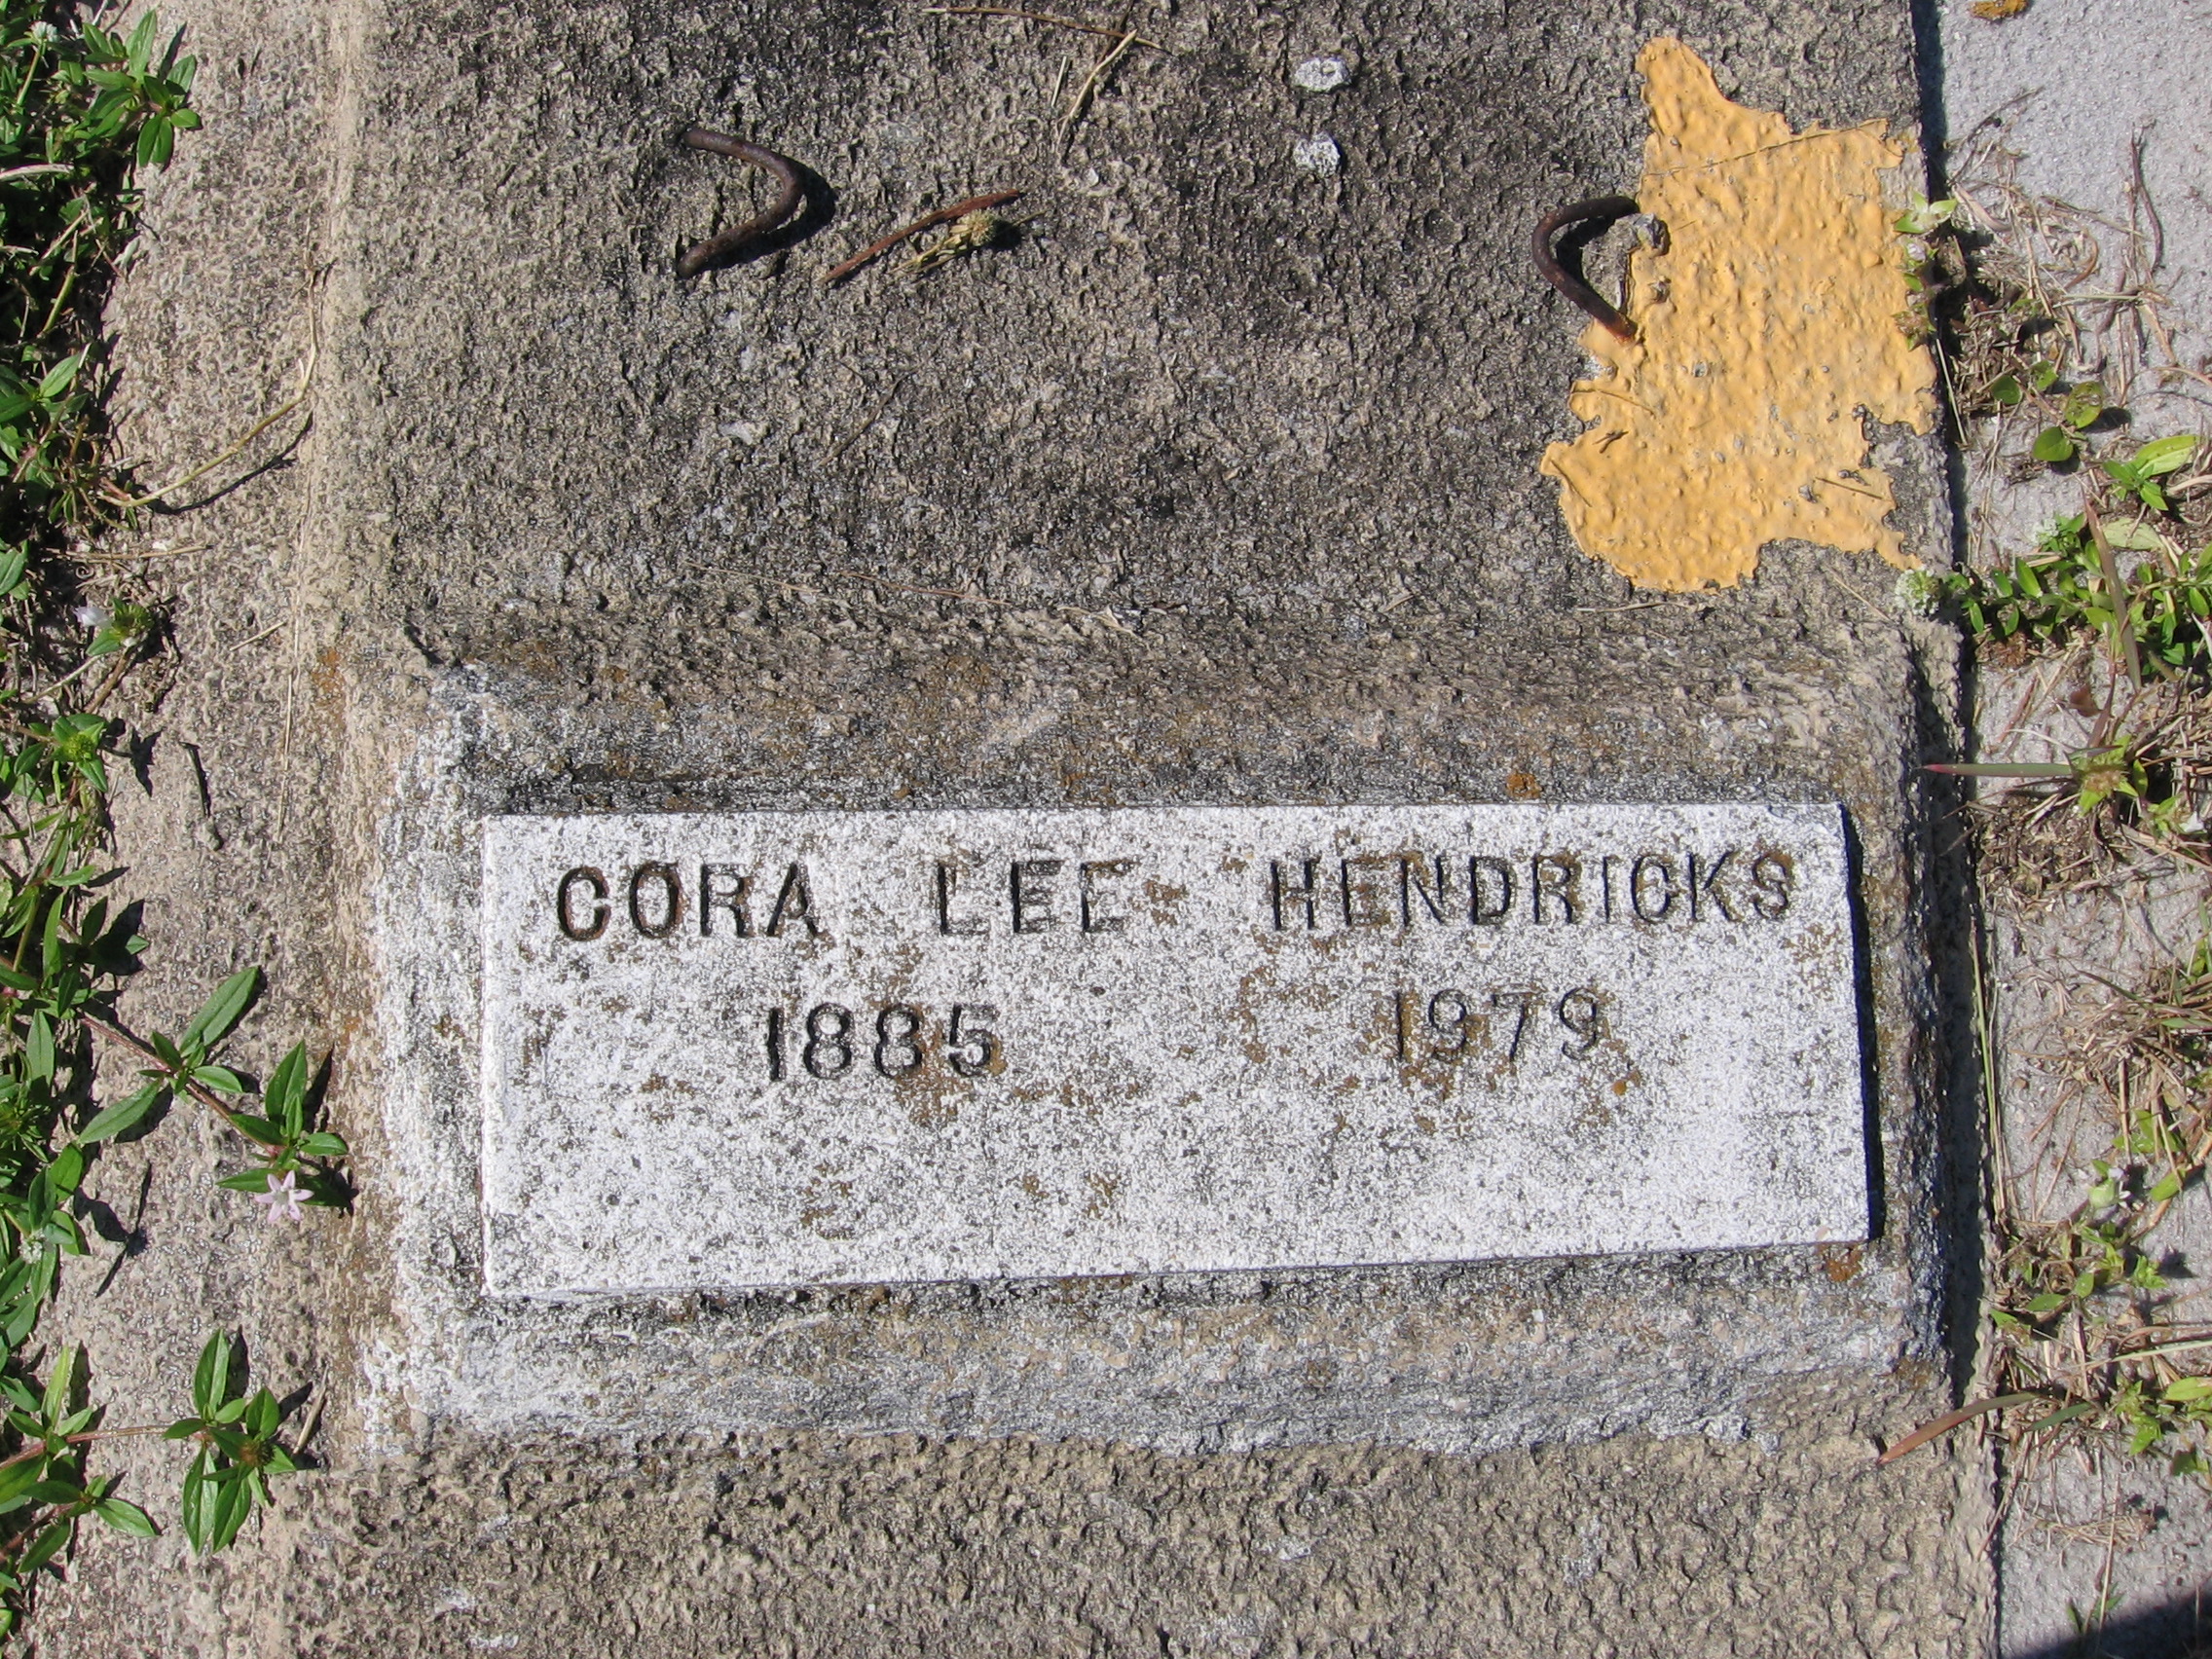 Cora Lee Hendricks